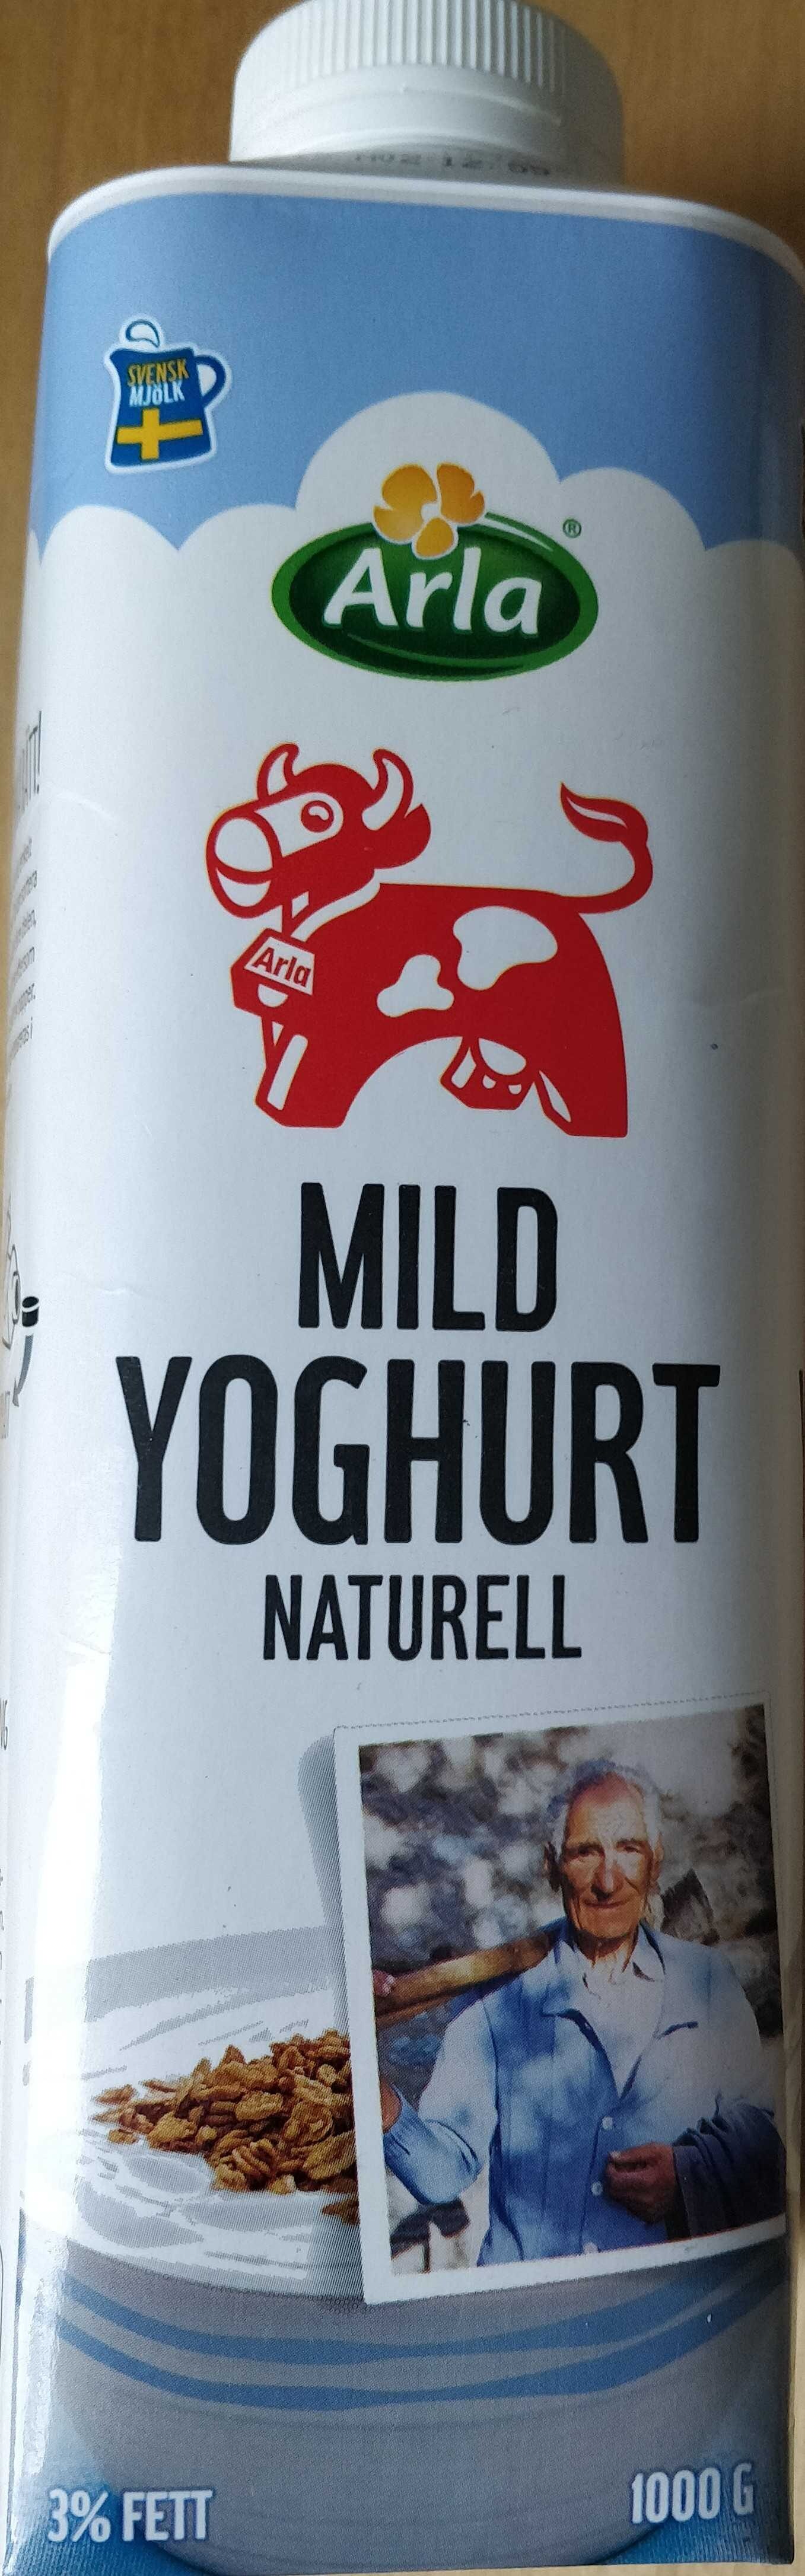 Mild yoghurt - Produkt - en